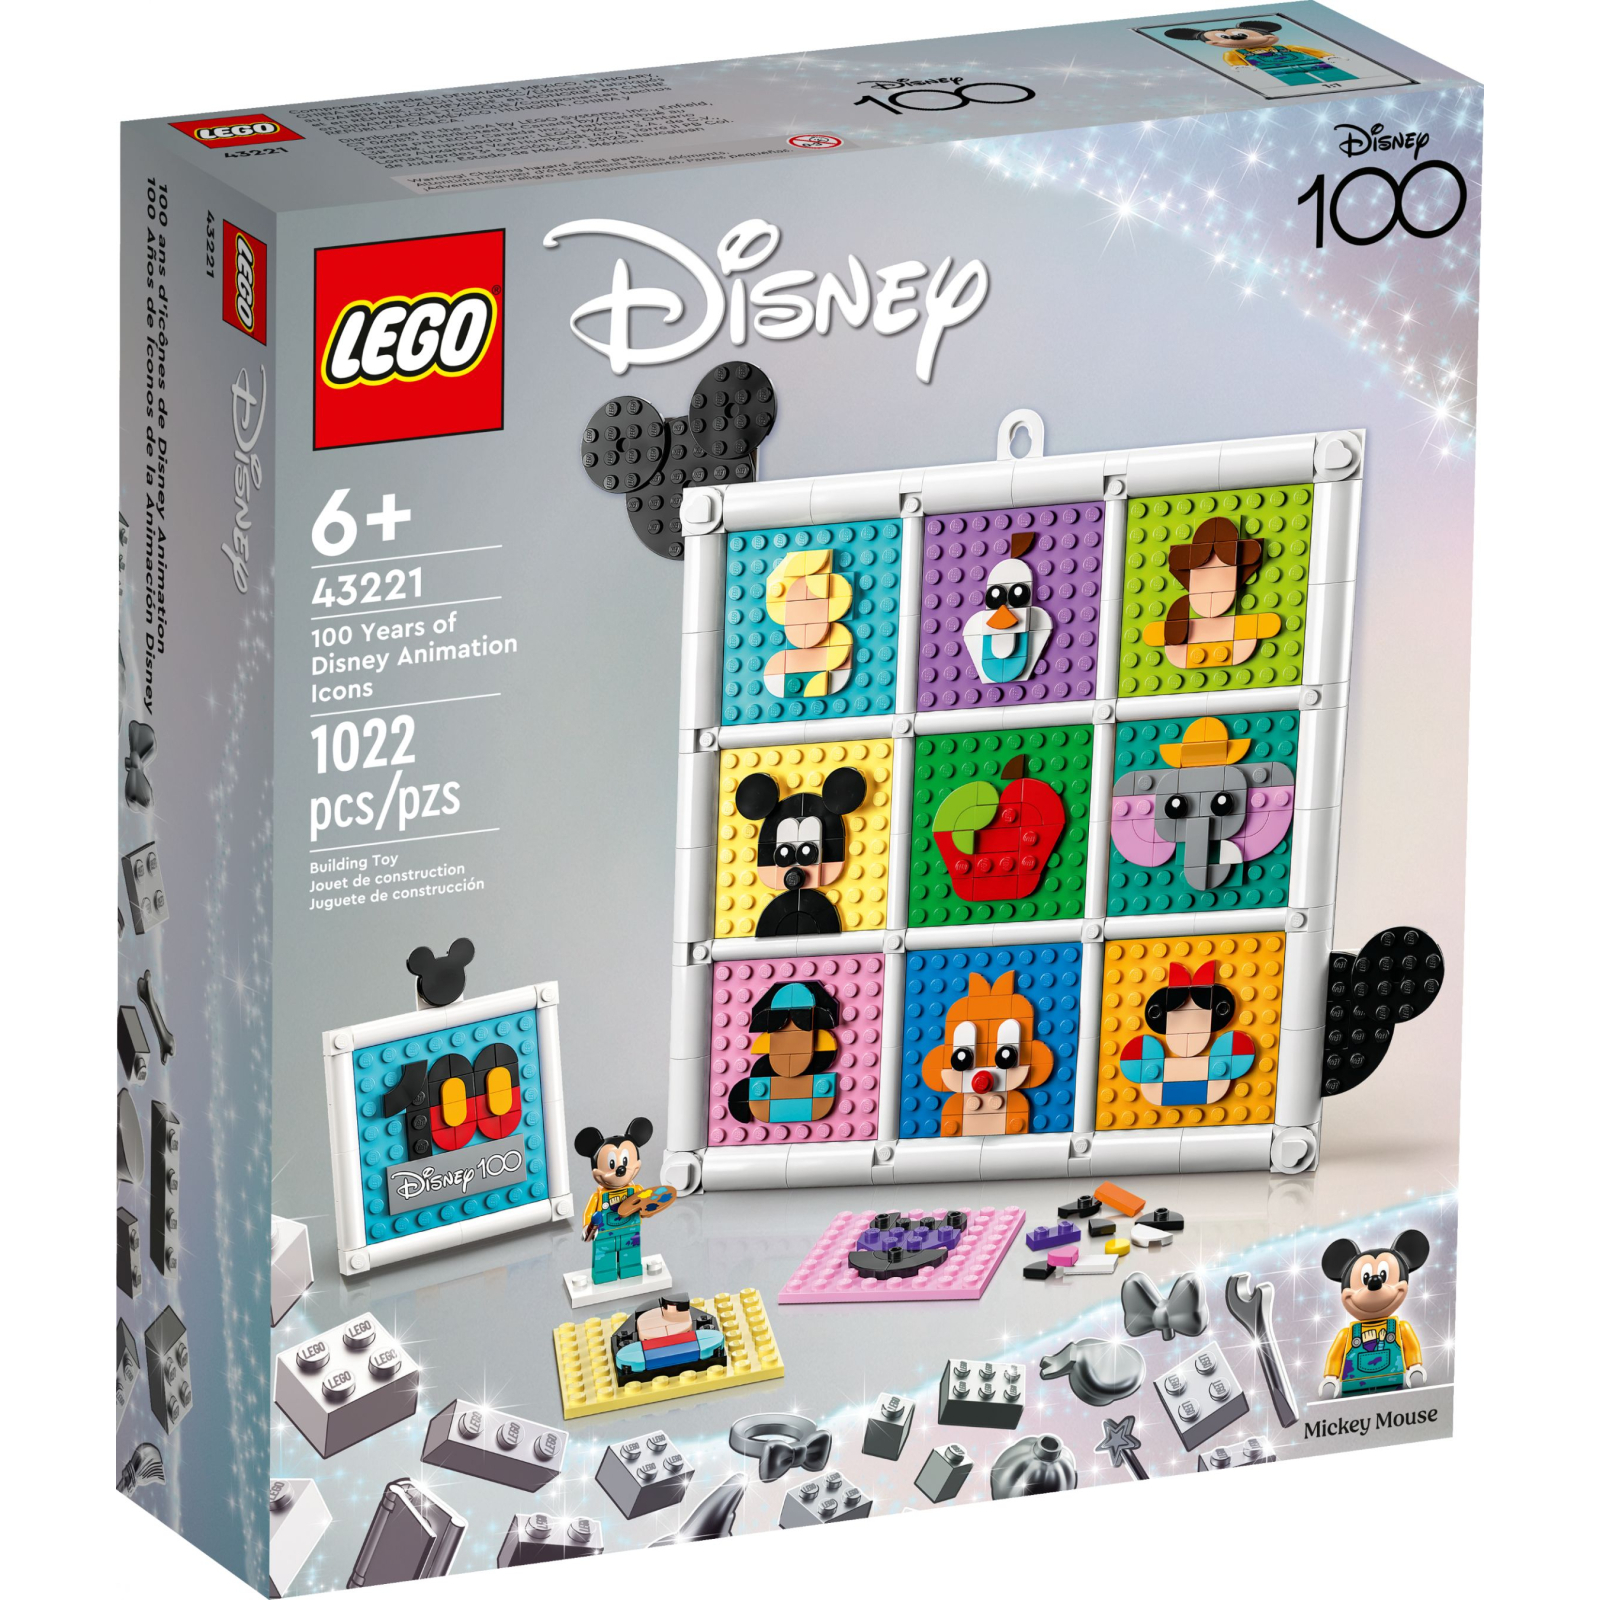 Конструктор LEGO Disney 100-я годовщина мультипликации Disney 1022 деталей (43221)